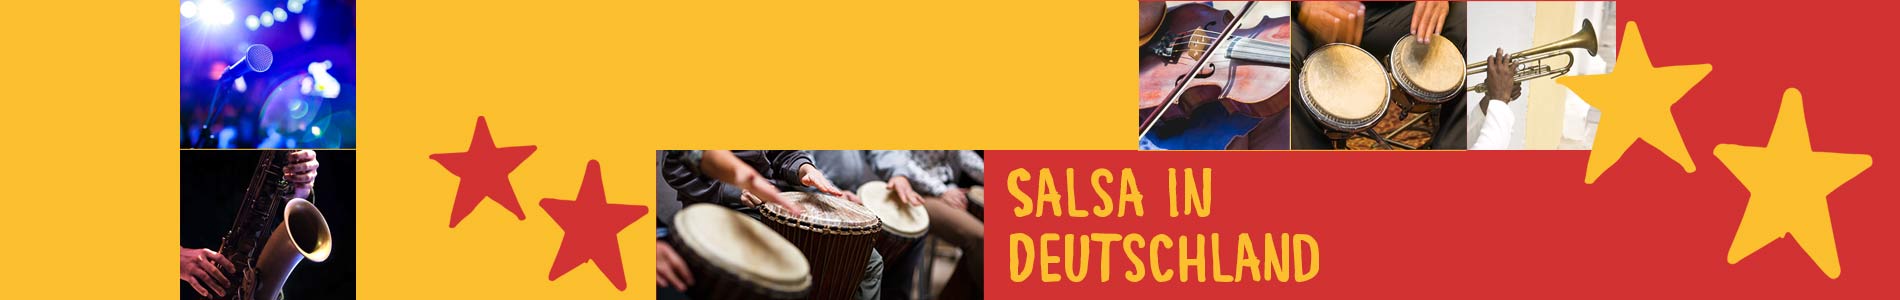 Salsa in Bruttig-Fankel – Salsa lernen und tanzen, Tanzkurse, Partys, Veranstaltungen